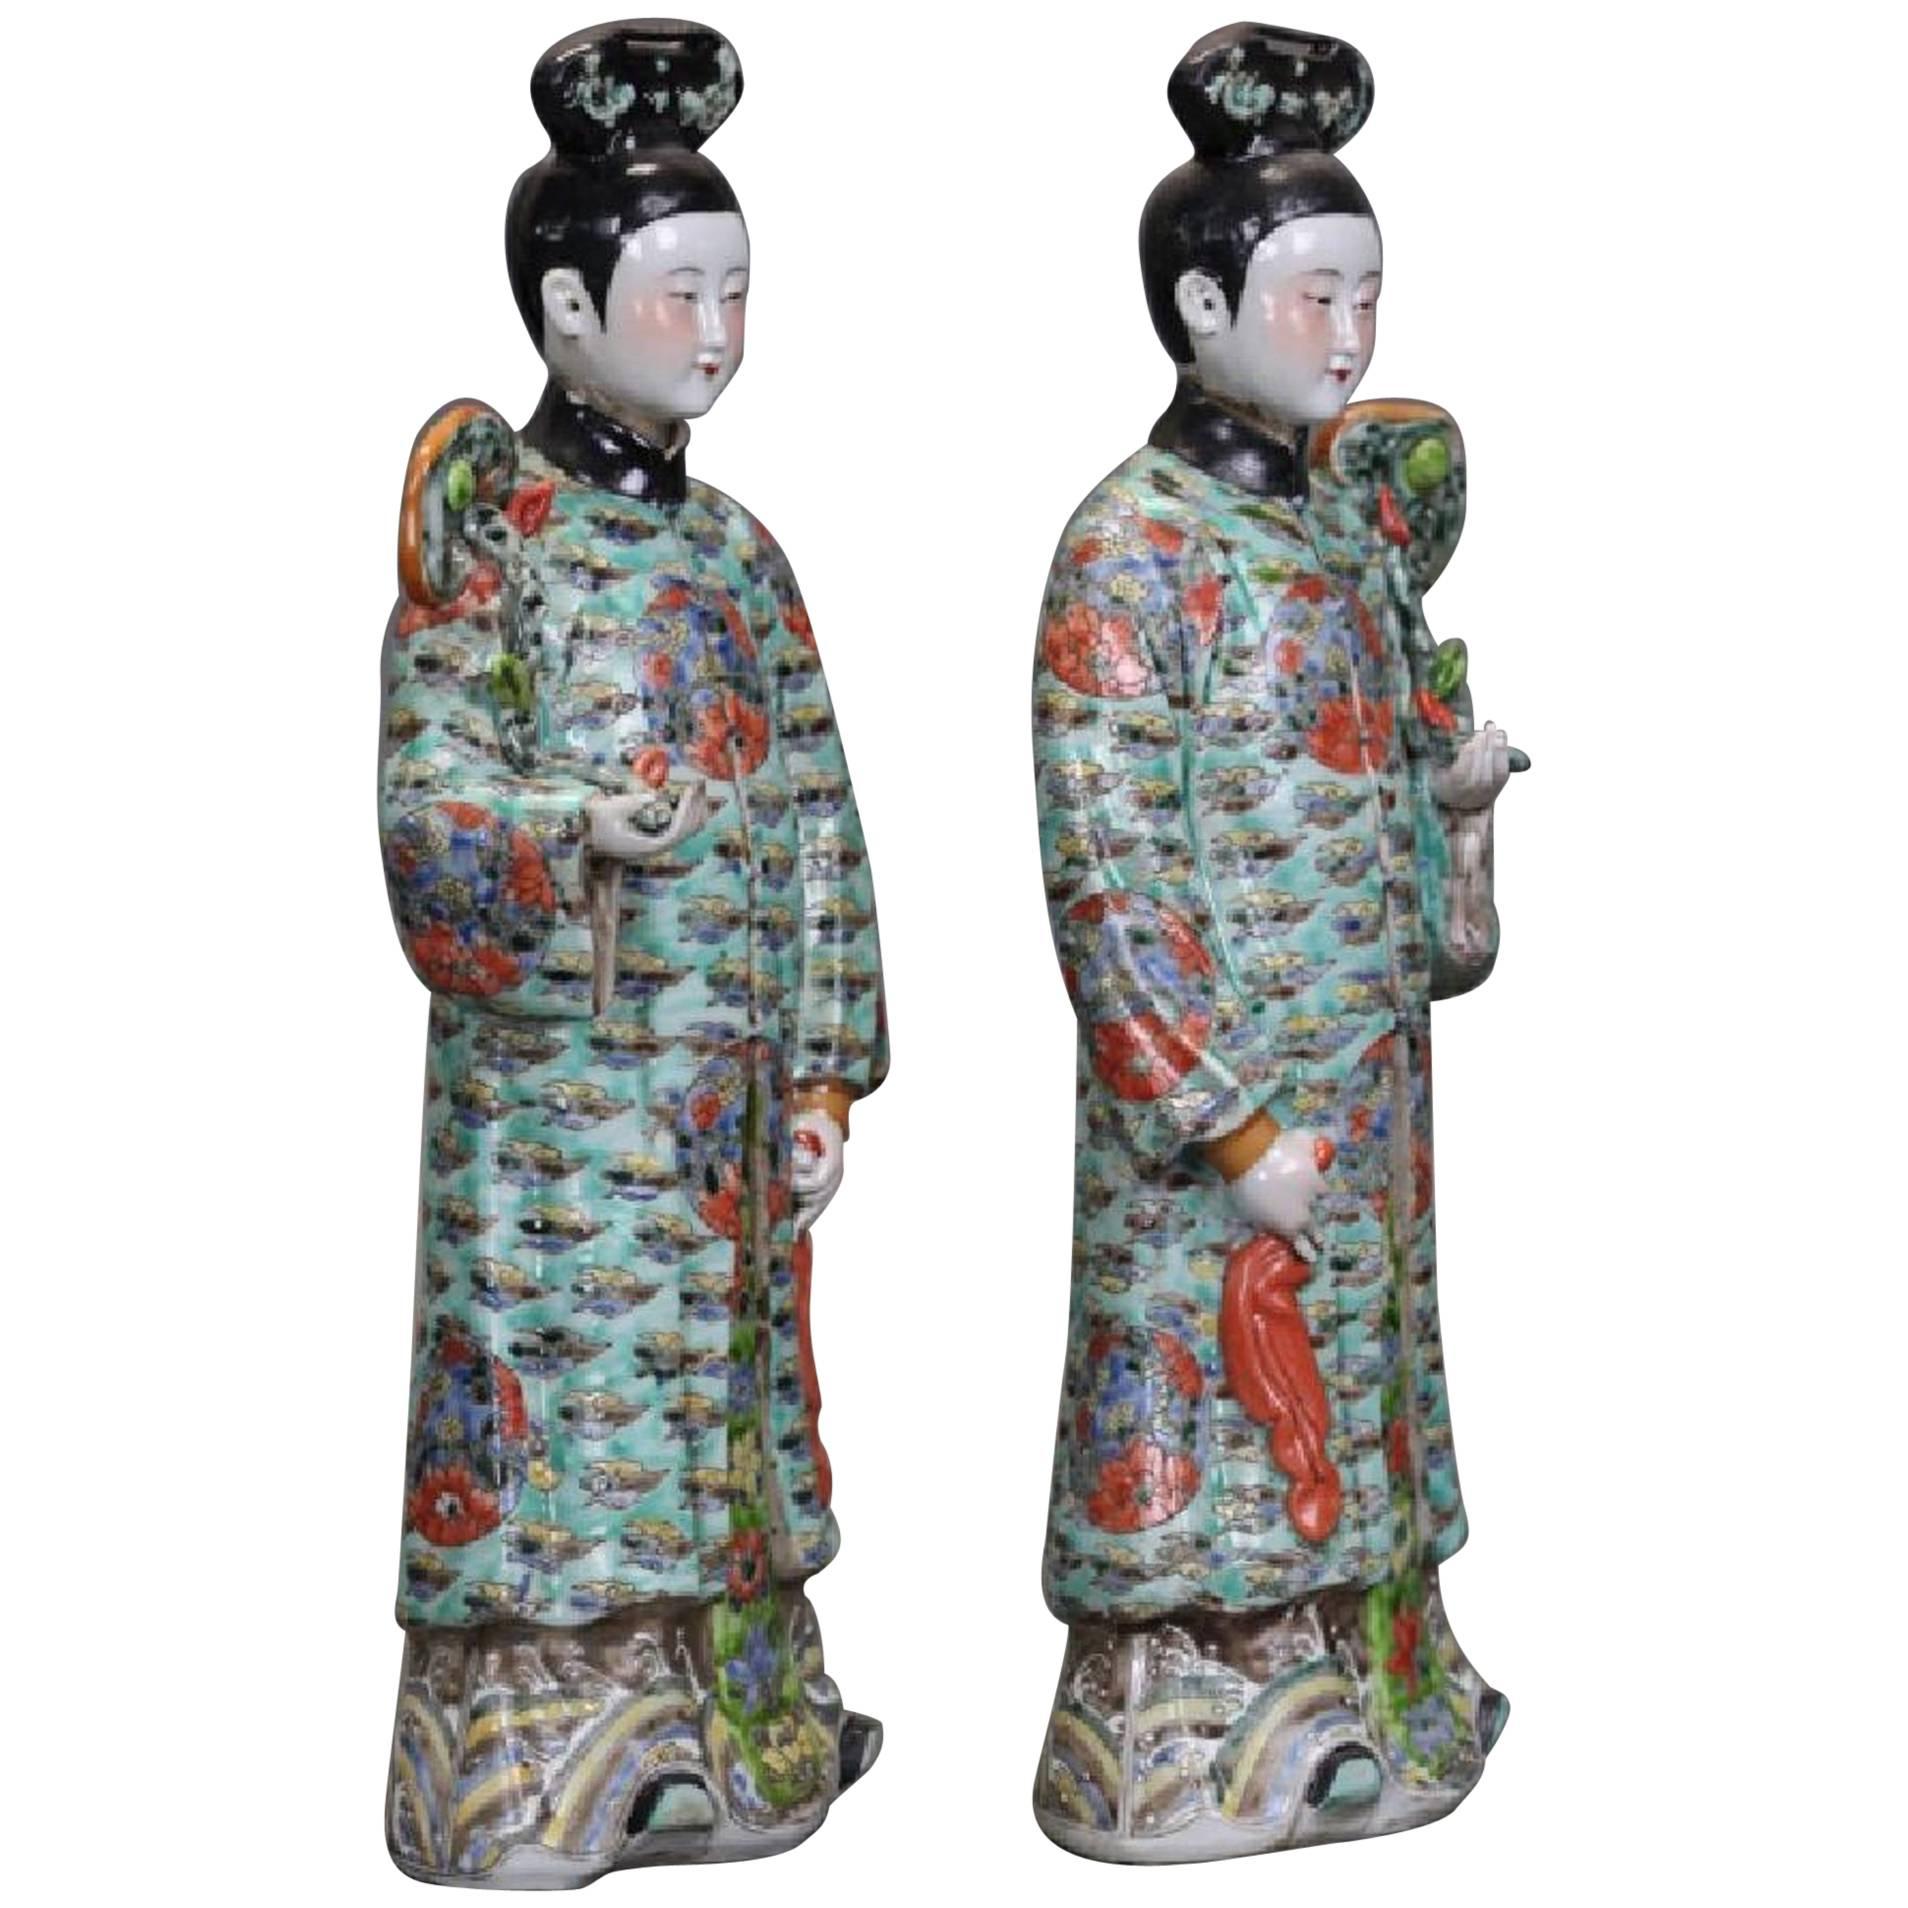 Belle paire de figurines en porcelaine d'exportation chinoise représentant des dames de la cour avec des têtes inclinées, fin de la dynastie Qing, vers 1900, Chine.
Les élégantes dames sont vêtues de superbes robes traditionnelles dans le style de